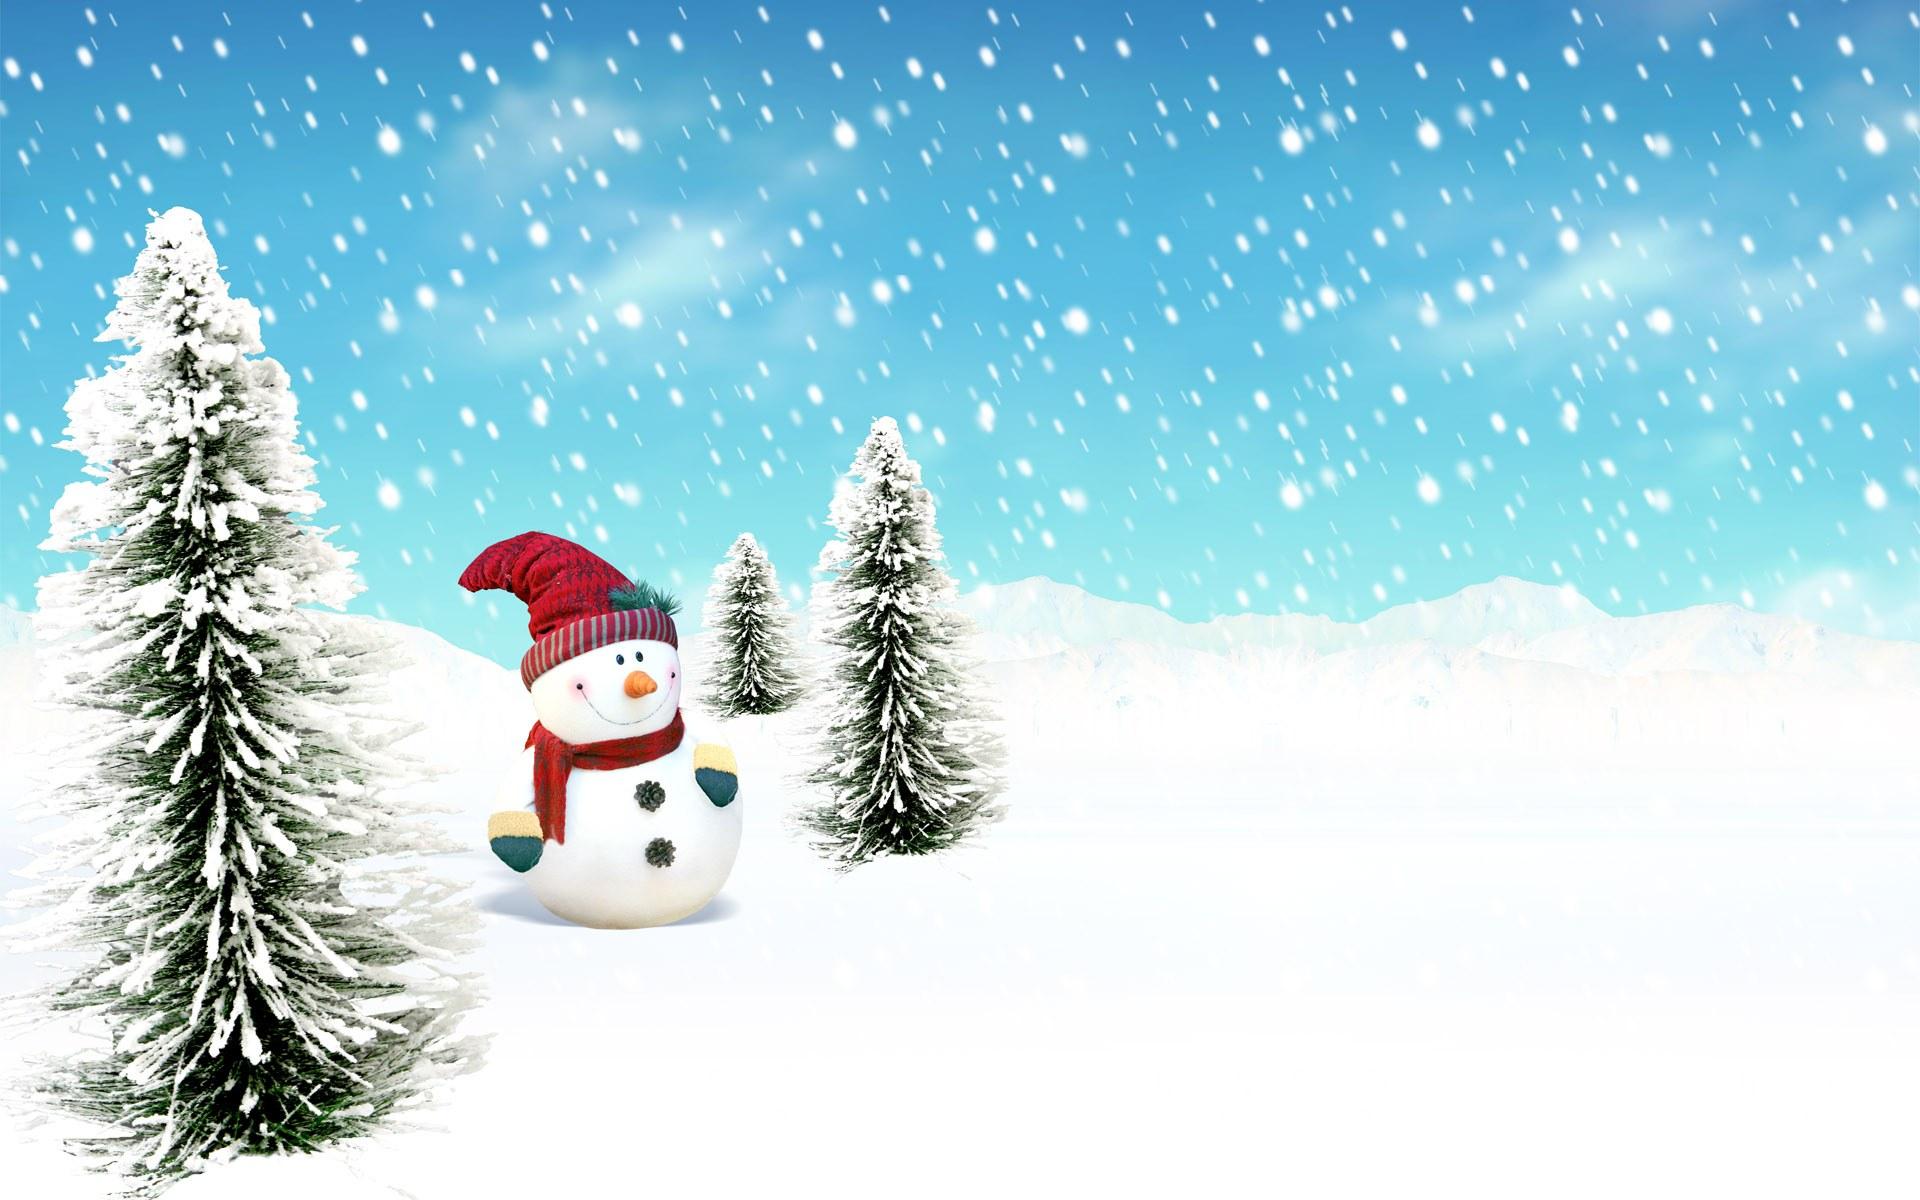 Cool Christmas Image, Snowfall Christmas Background